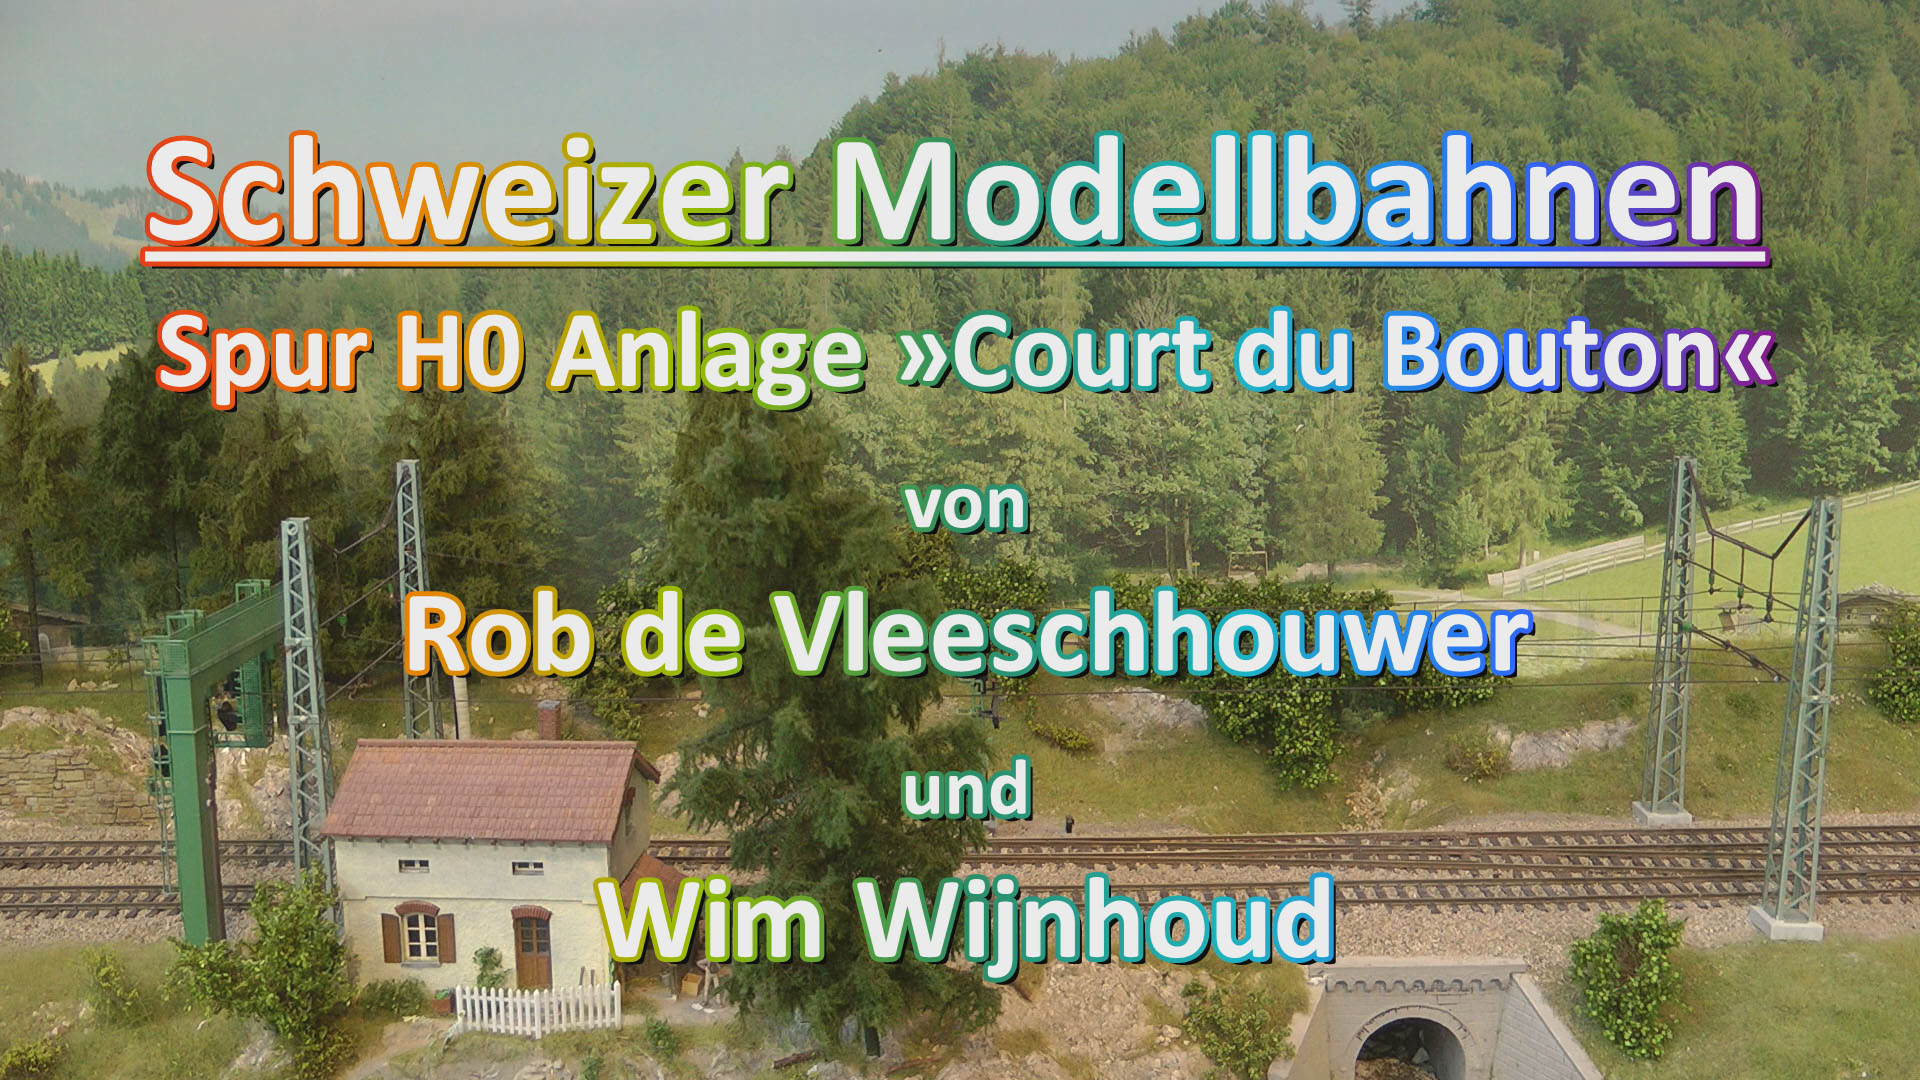 Schweizer Modellbahnen - H0 Anlage Court du Bouton von Rob de Vleeschhouwer und Wim Wijnhoud